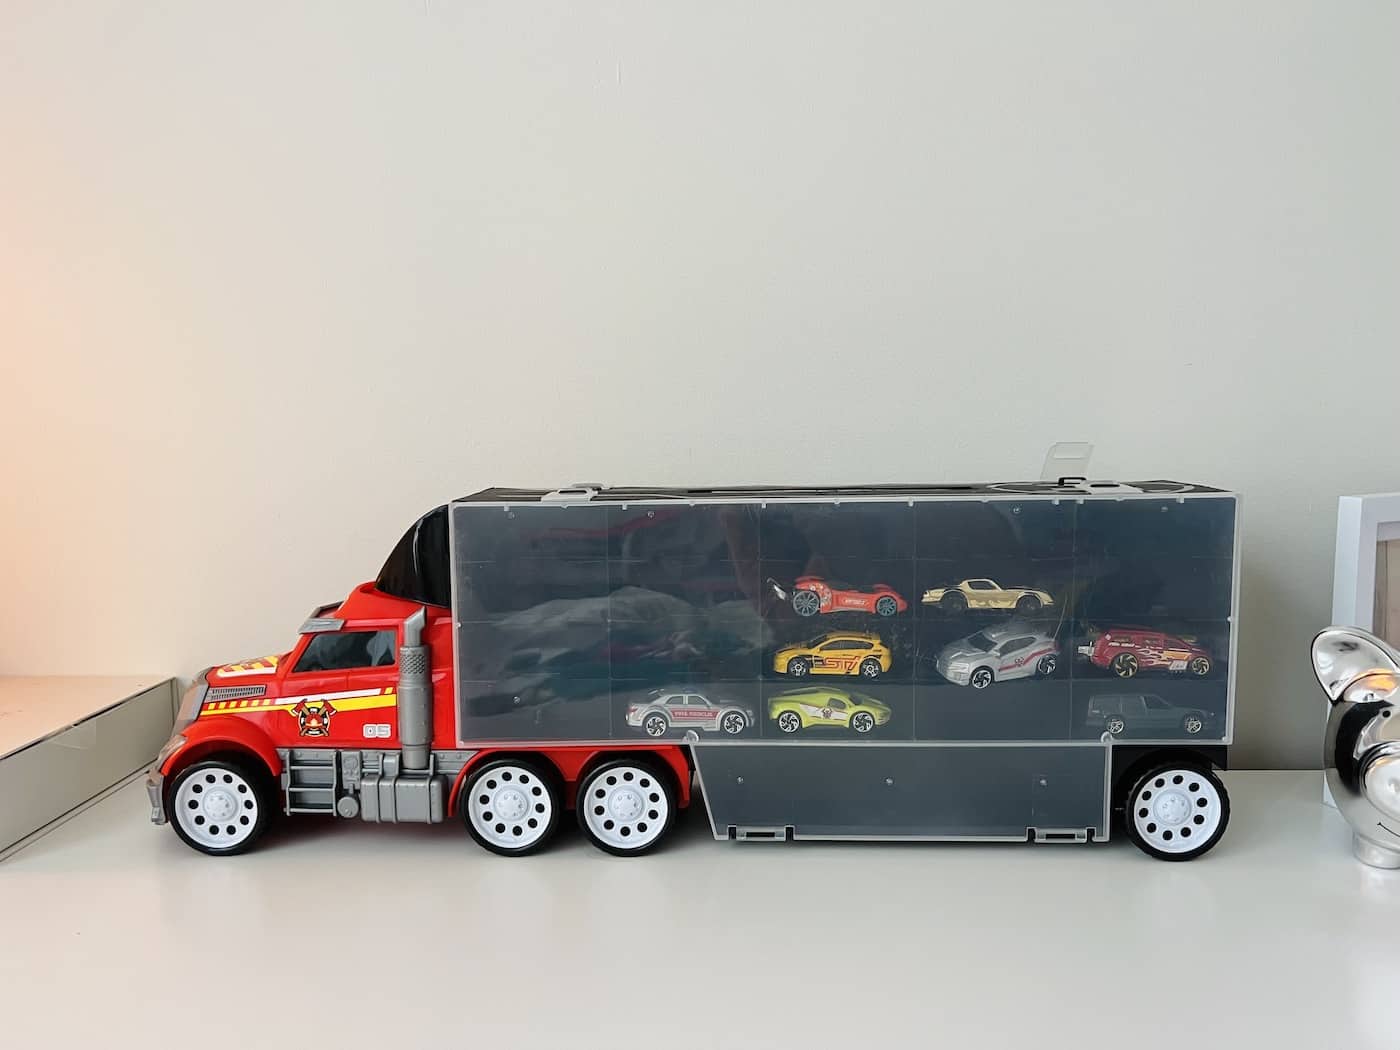 Toy car storage